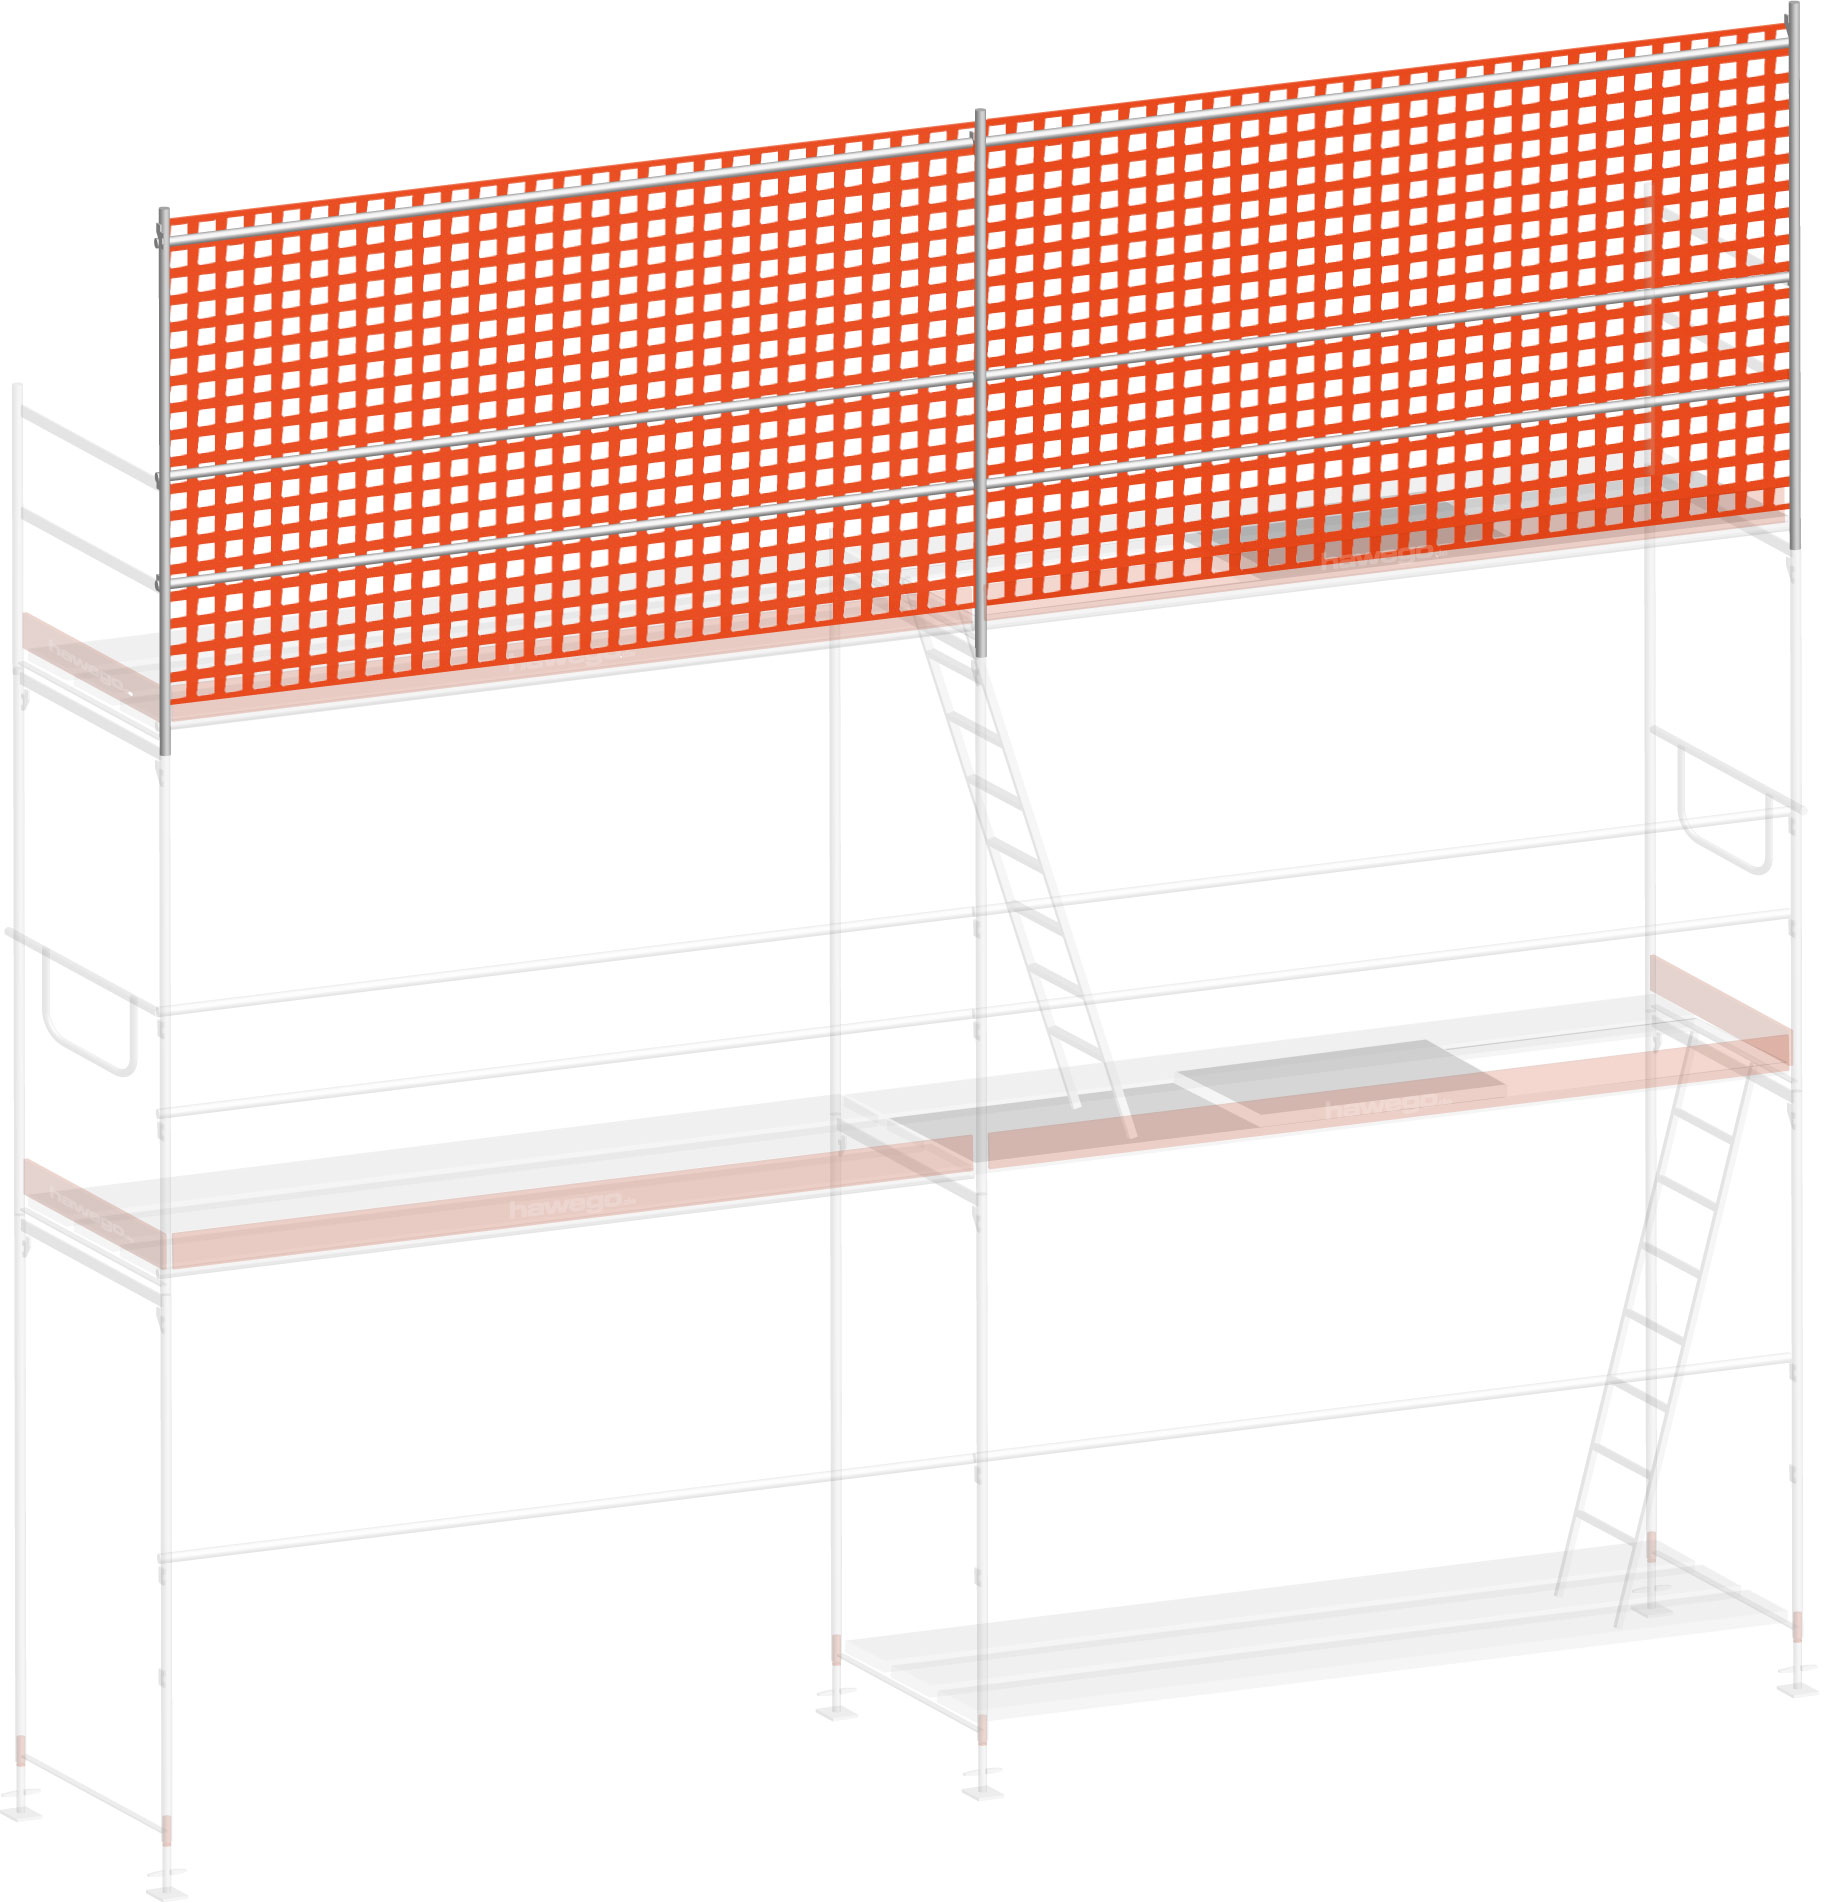 Layher Blitz Dachfanggerüst-Aufsatz ohne Konsole - 6,14 m Erweiterung Dachfangschutz mit Fangnetz für Layher Fassadengerüst - Feldlänge 3,07 m (LG-307-000-0614) Bild-01